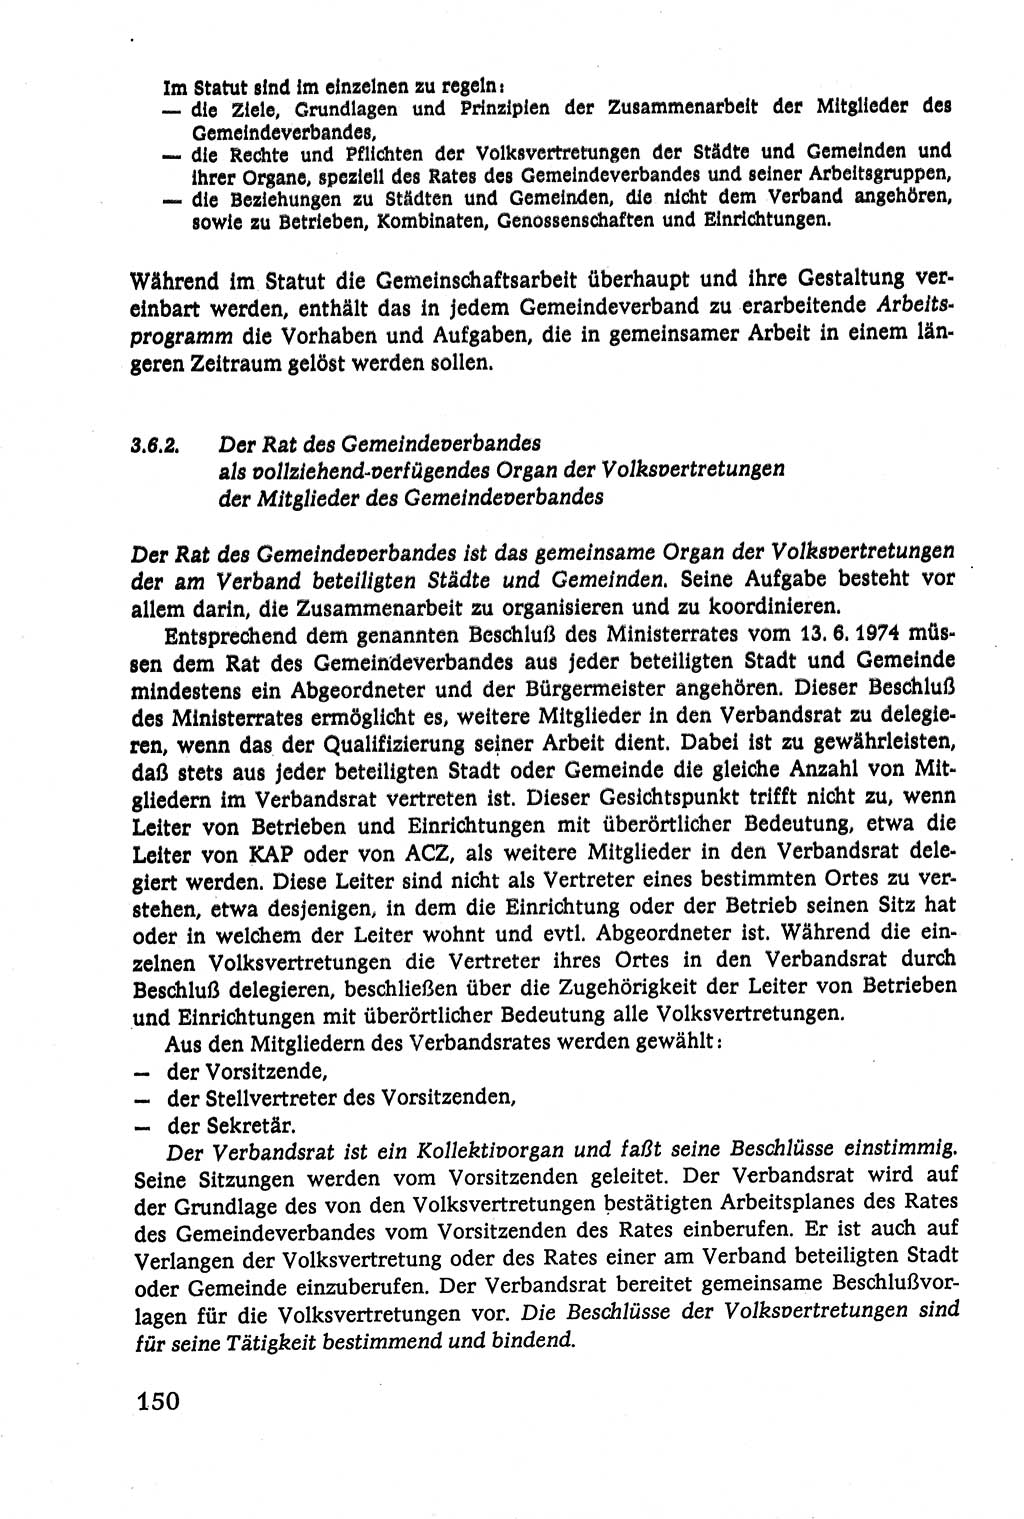 Verwaltungsrecht [Deutsche Demokratische Republik (DDR)], Lehrbuch 1979, Seite 150 (Verw.-R. DDR Lb. 1979, S. 150)